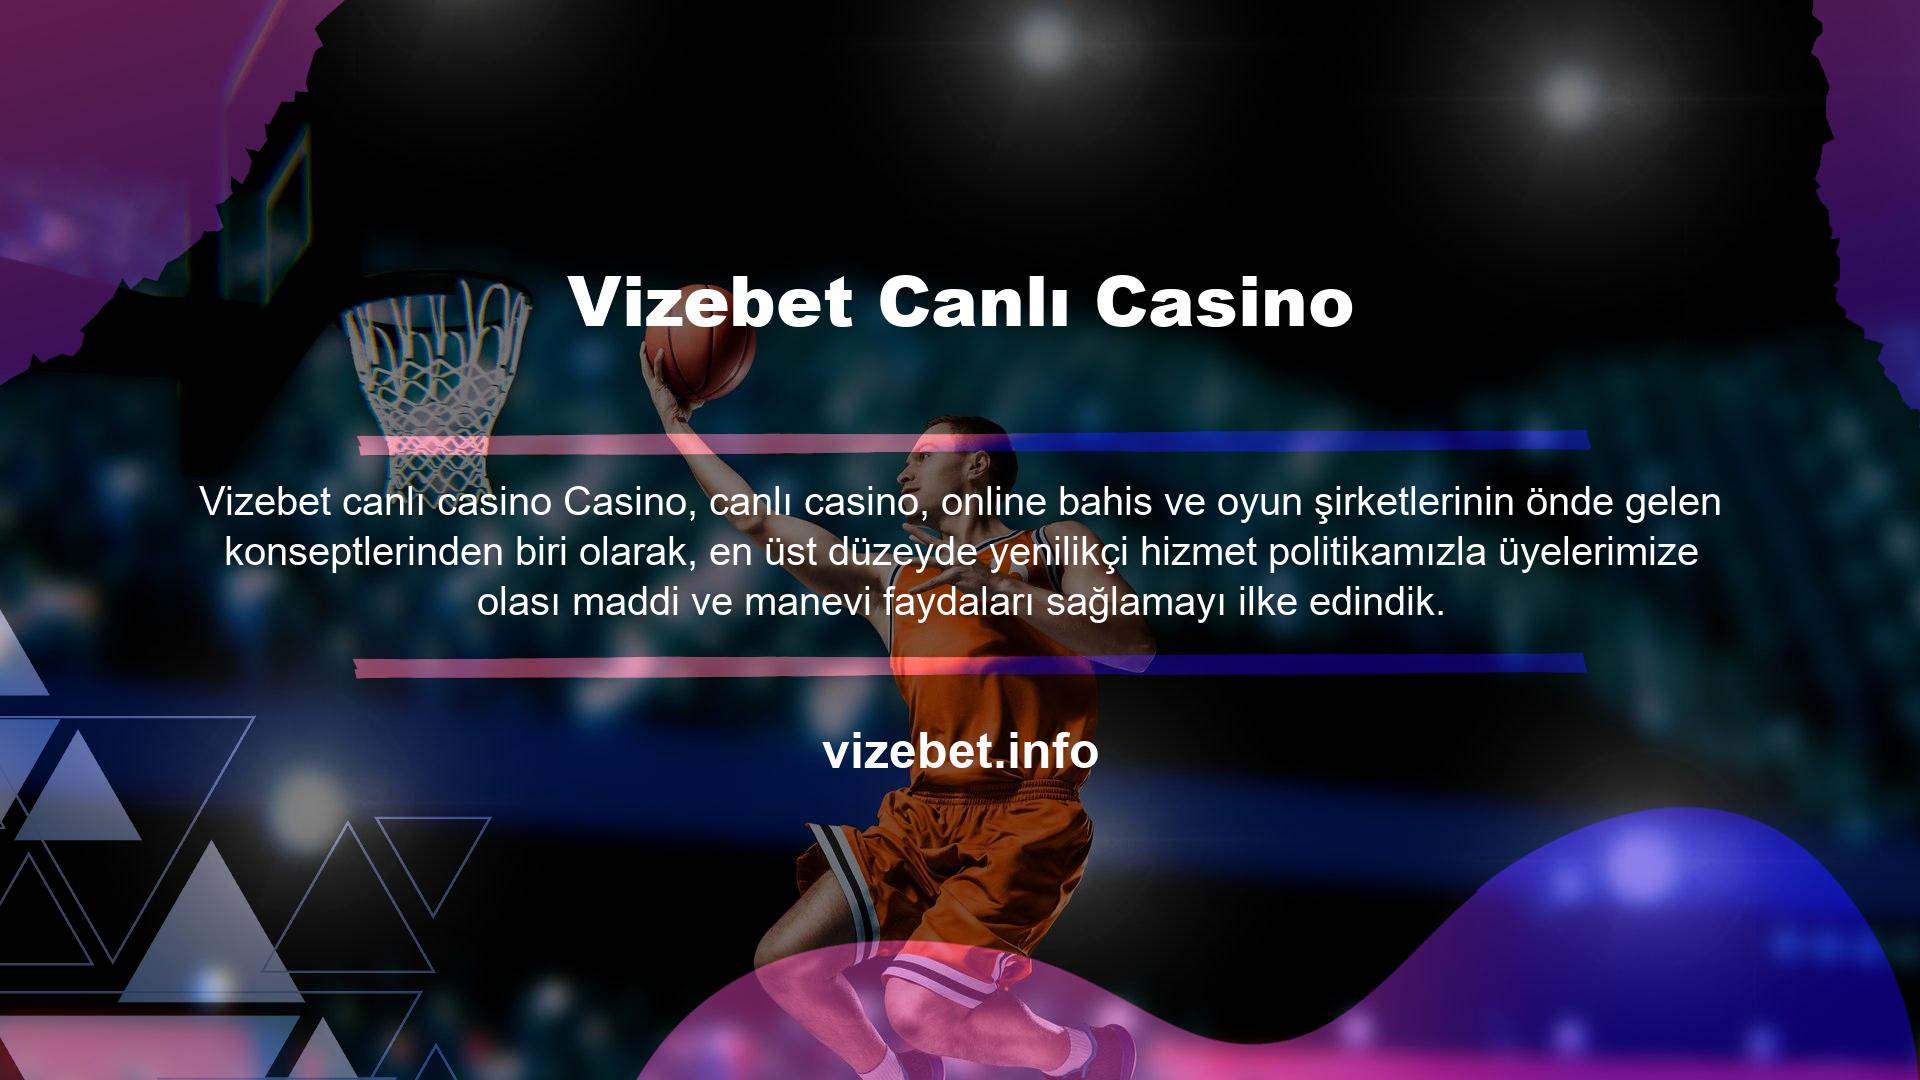 Çevrimiçi casino hizmetlerinin öncelikle eğlenceli olması gerektiğine inanıyoruz ve mümkün olan en iyi hizmeti sunarak tüm müşterilerimize keyifli bir oyun deneyimi sunmaya çalışıyoruz